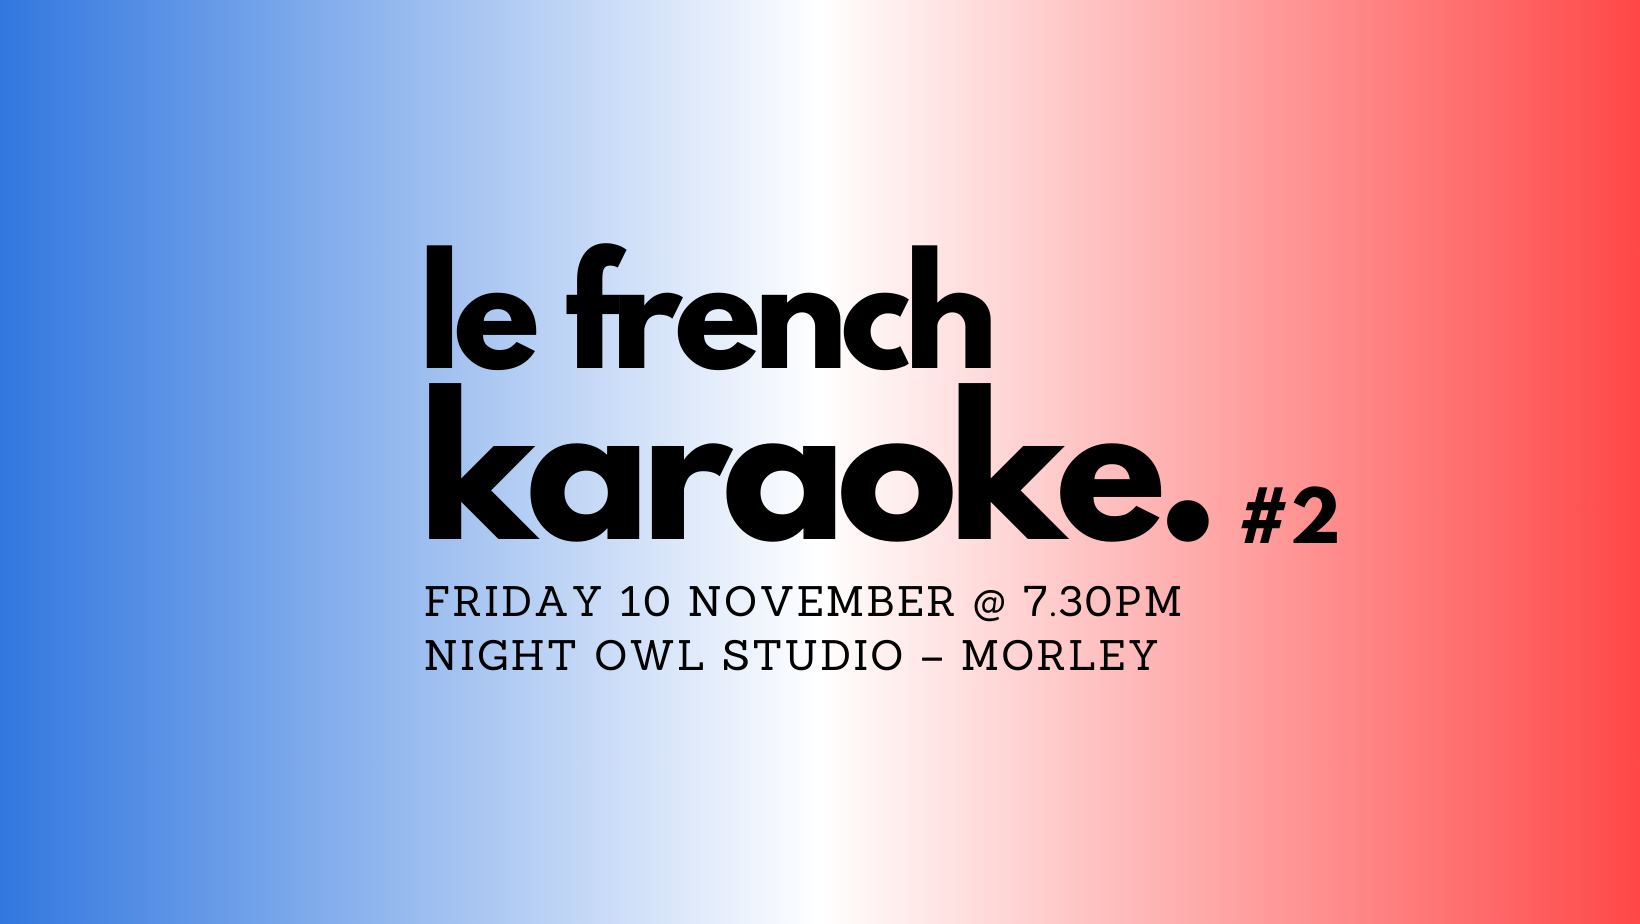 Le French Karaoke #2